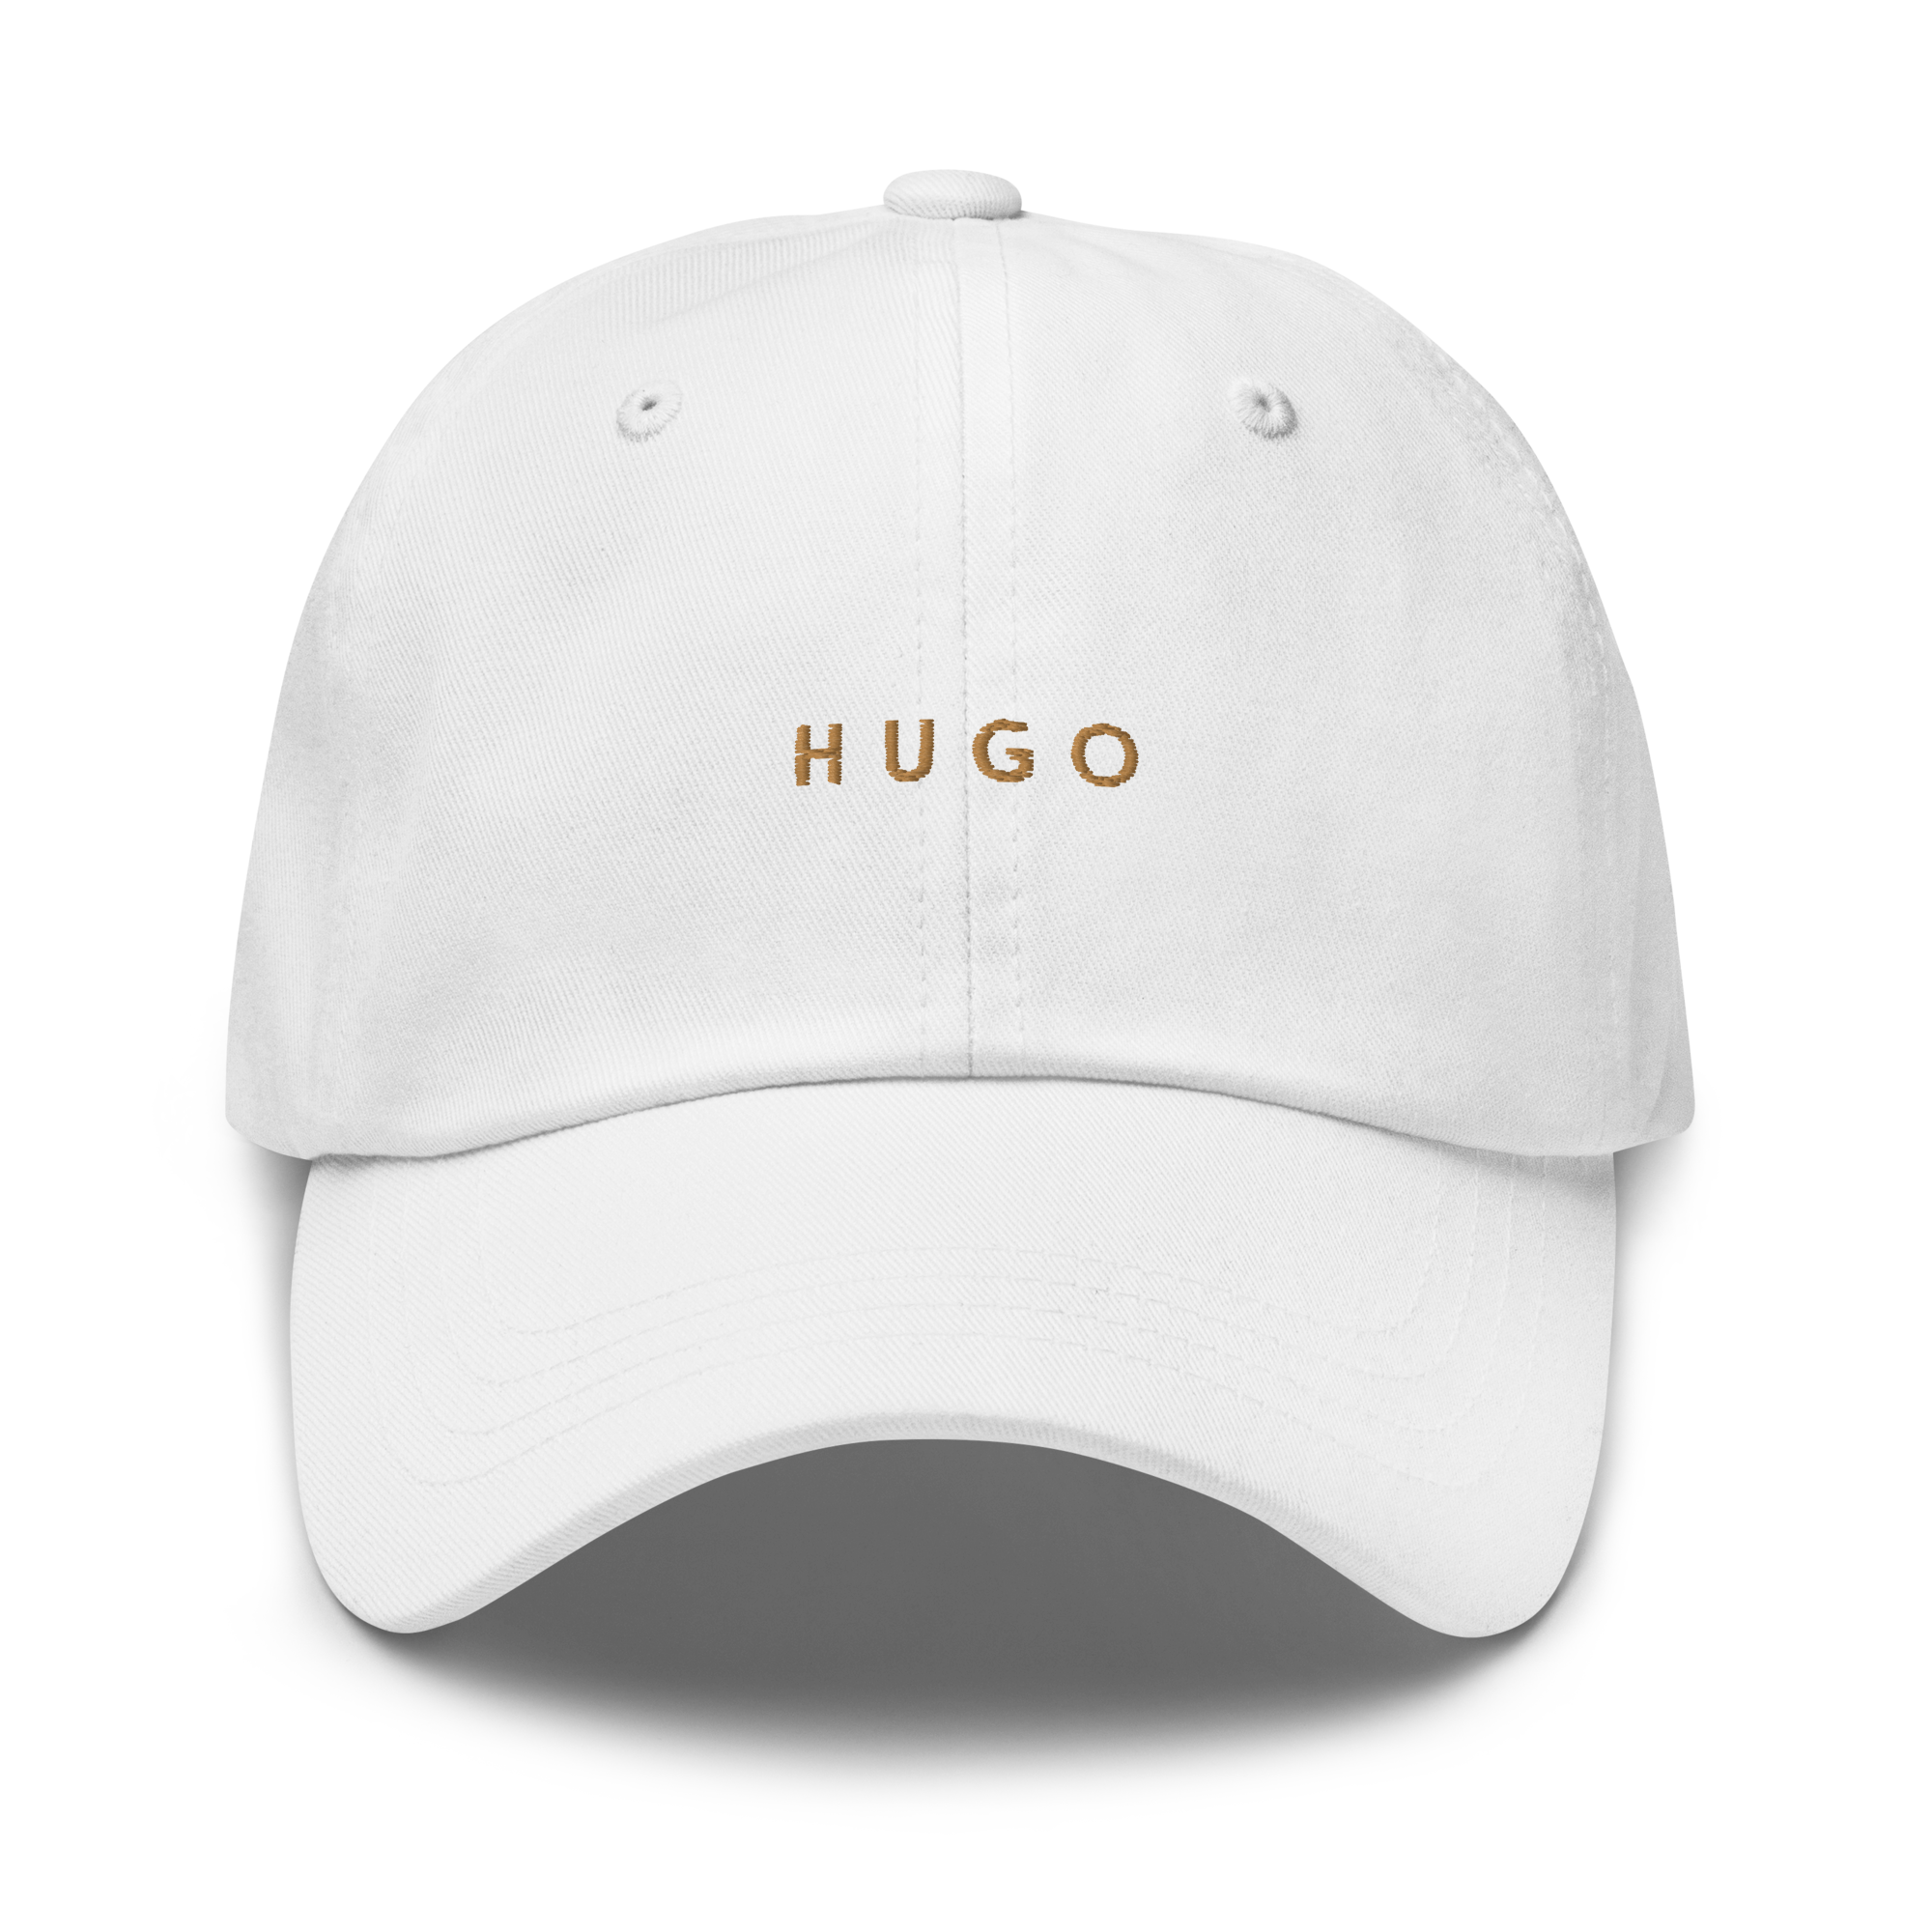 Hugo Cap